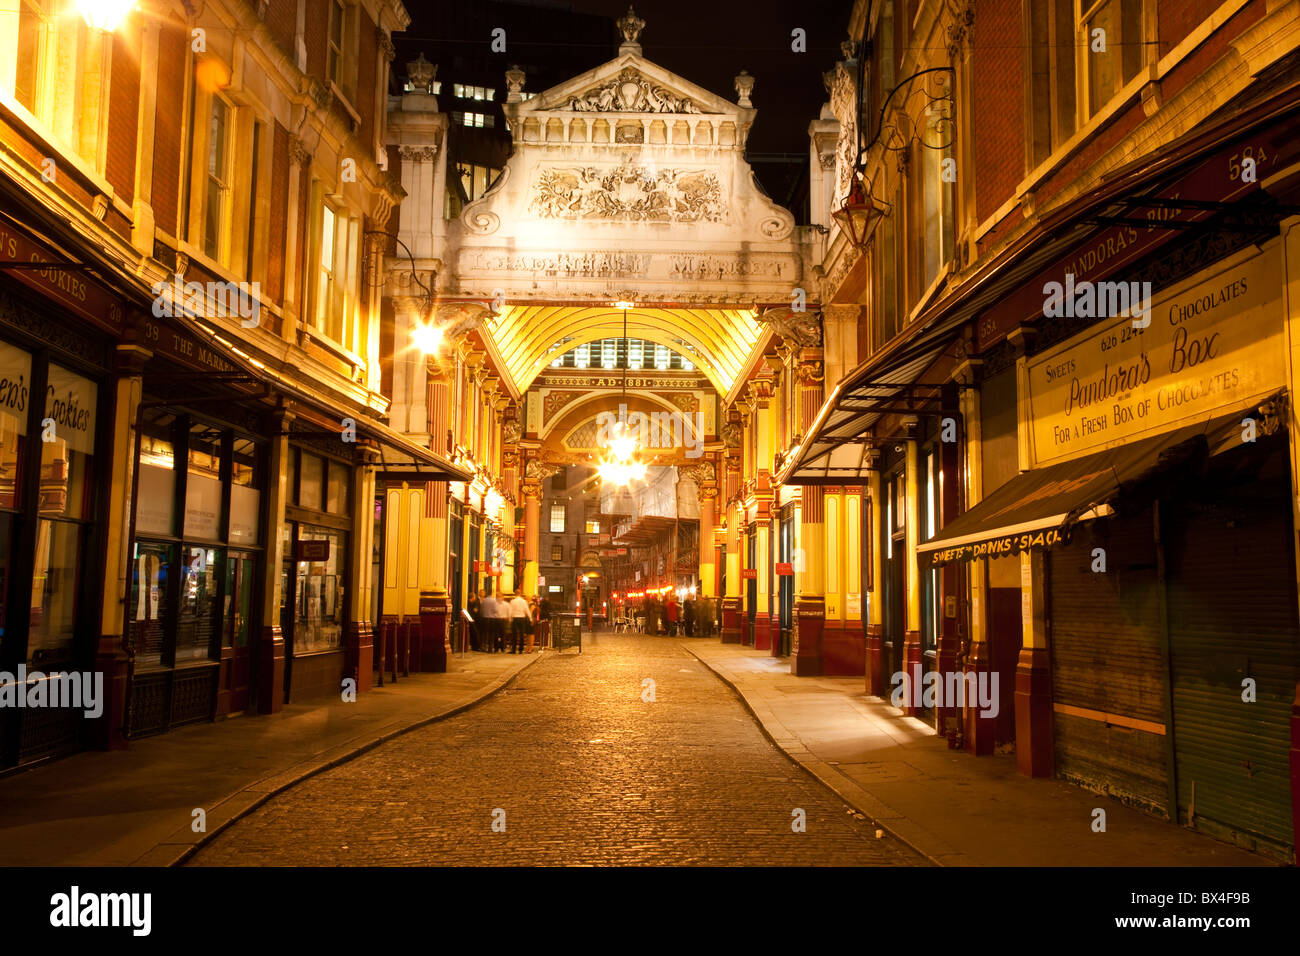 Old illuminated street in London at night Stock Photo